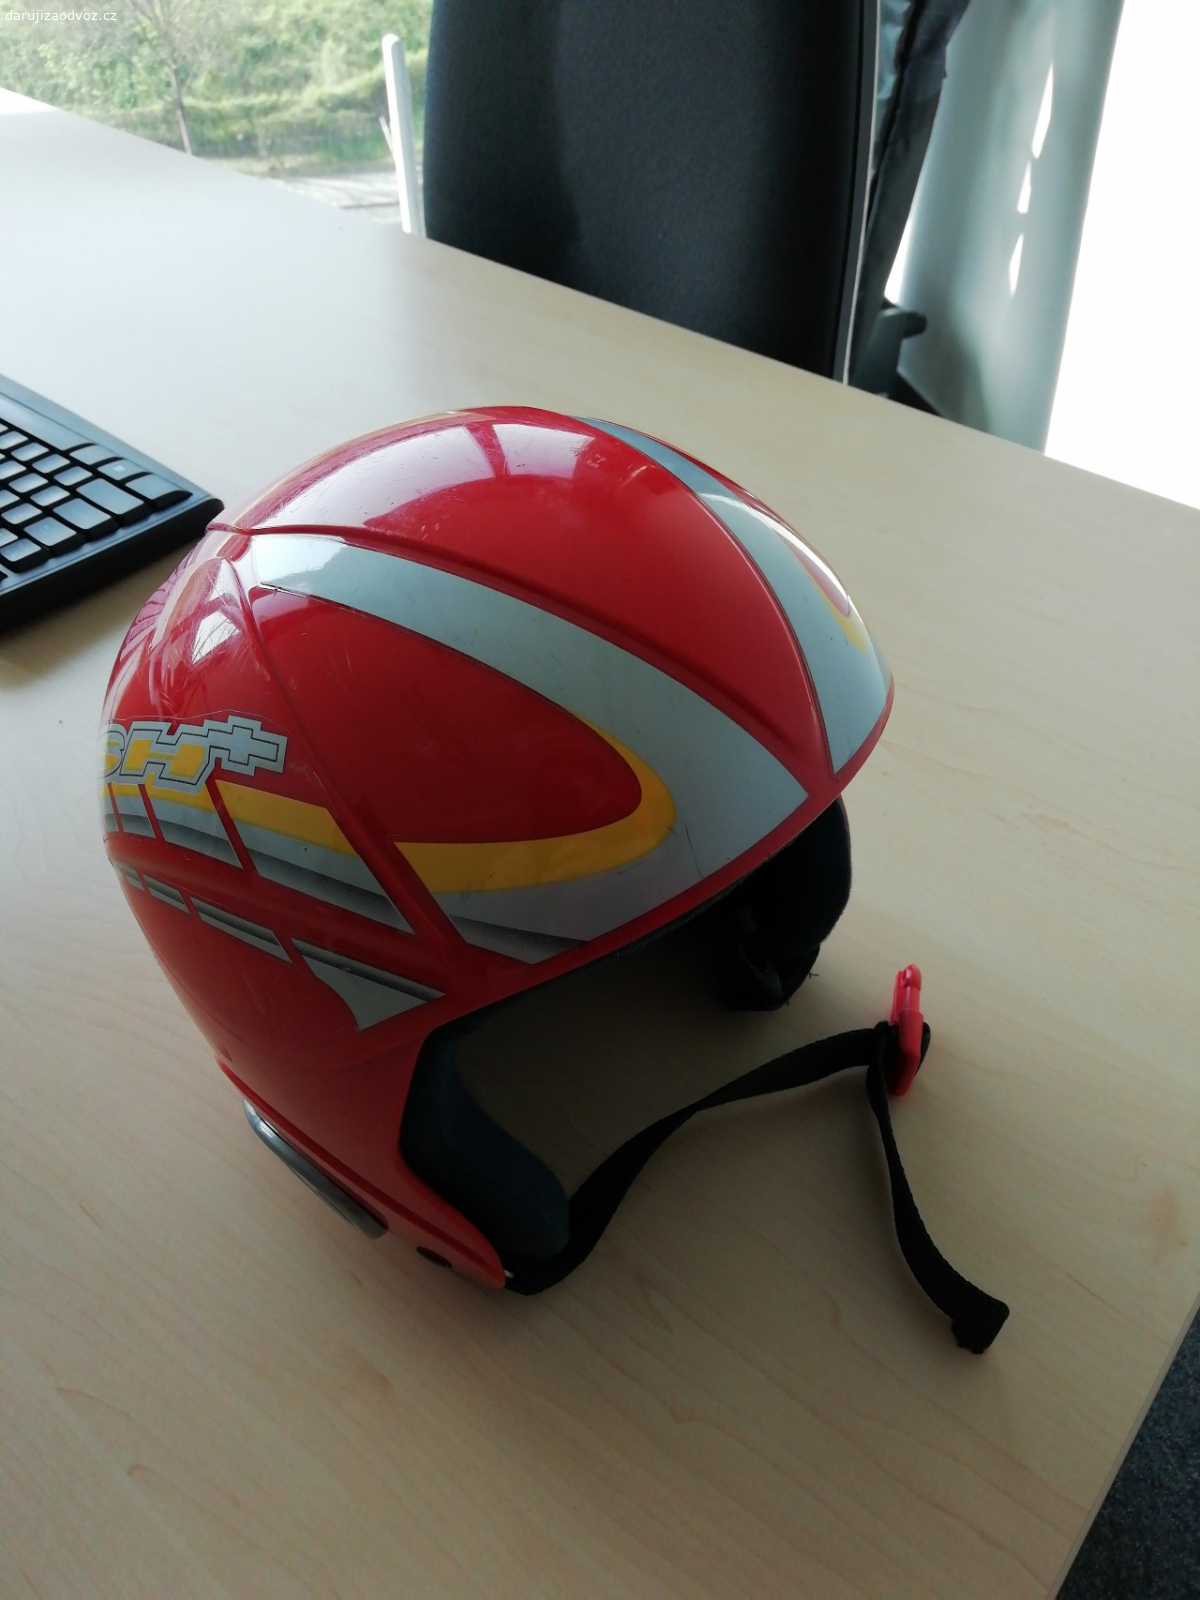 Dětská helma sh+, vel. 55-56. Daruji za odvoz (potěší svazek redkvicek, není podmínkou) dětskou lyžařskou helmu, lehce odřená, chybí jedna chránička na ucho.